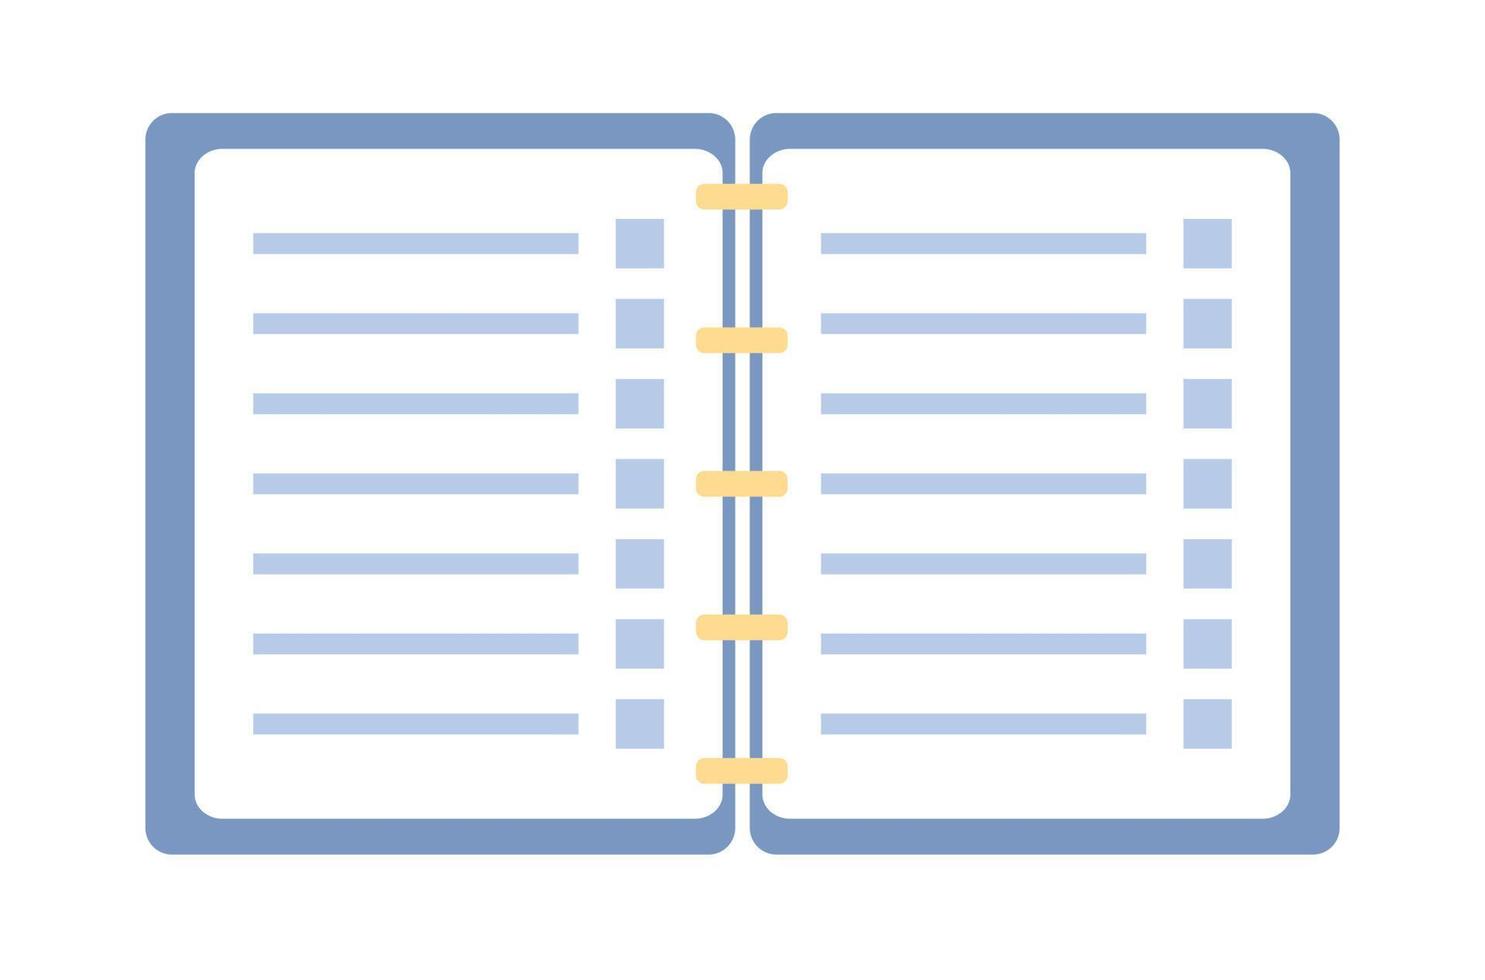 öppen anteckningsbok ikon. anteckningsblock och papper ark tecken. vektor platt illustration